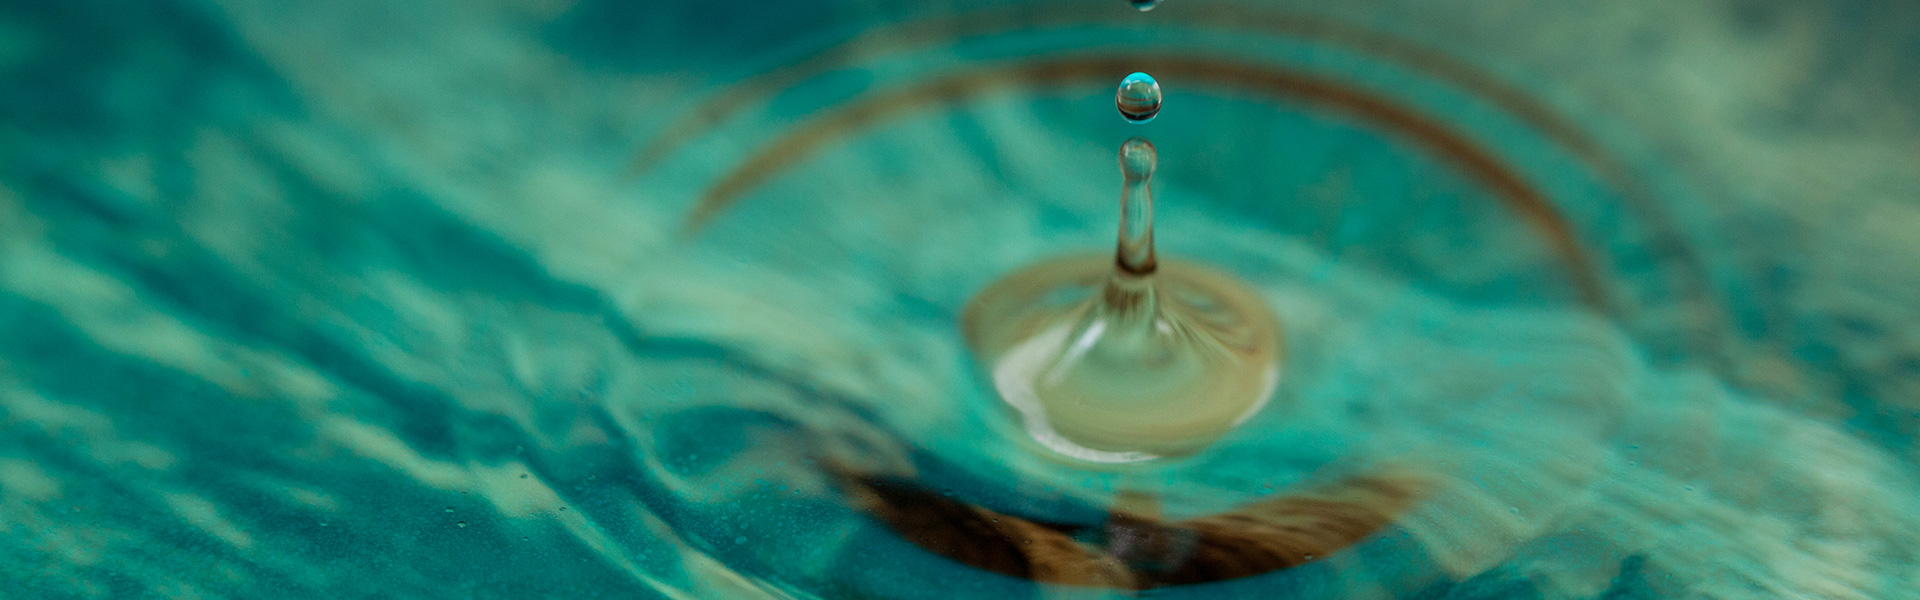 Etapas do tratamento de água: conheça as análises mais importantes